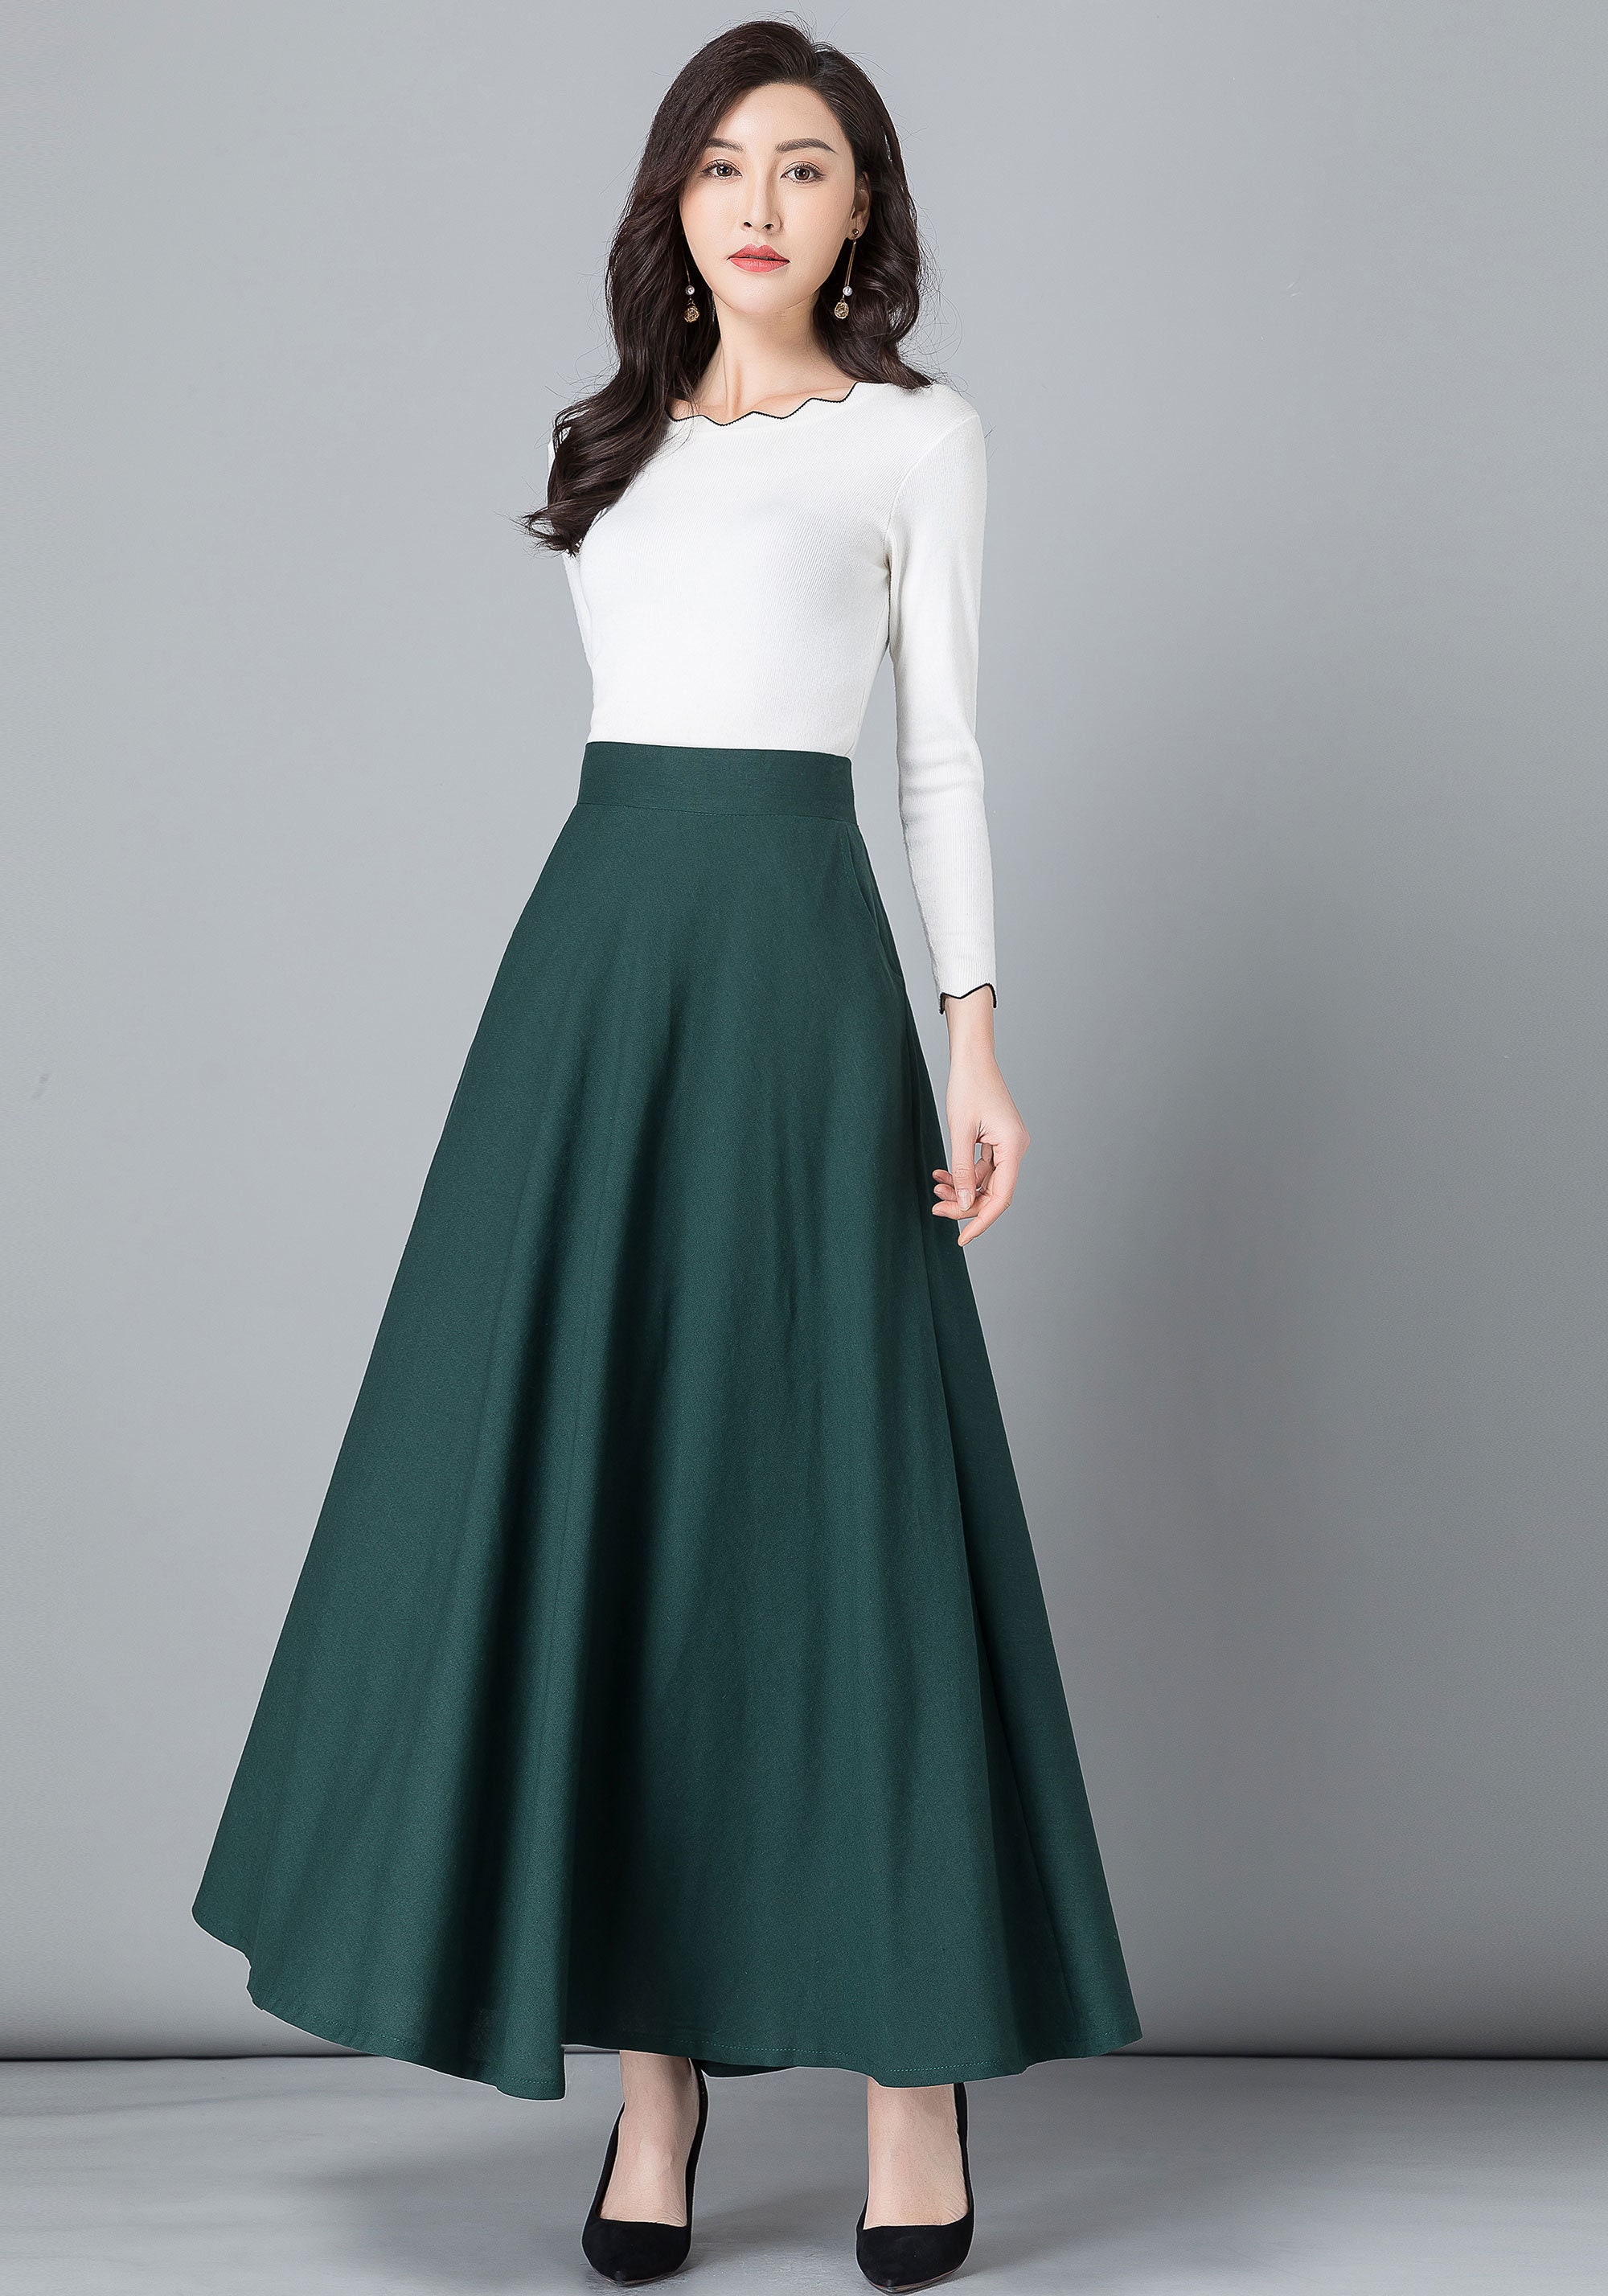 Green Linen skirt Maxi cotton Linen skirt Elastic waist | Etsy